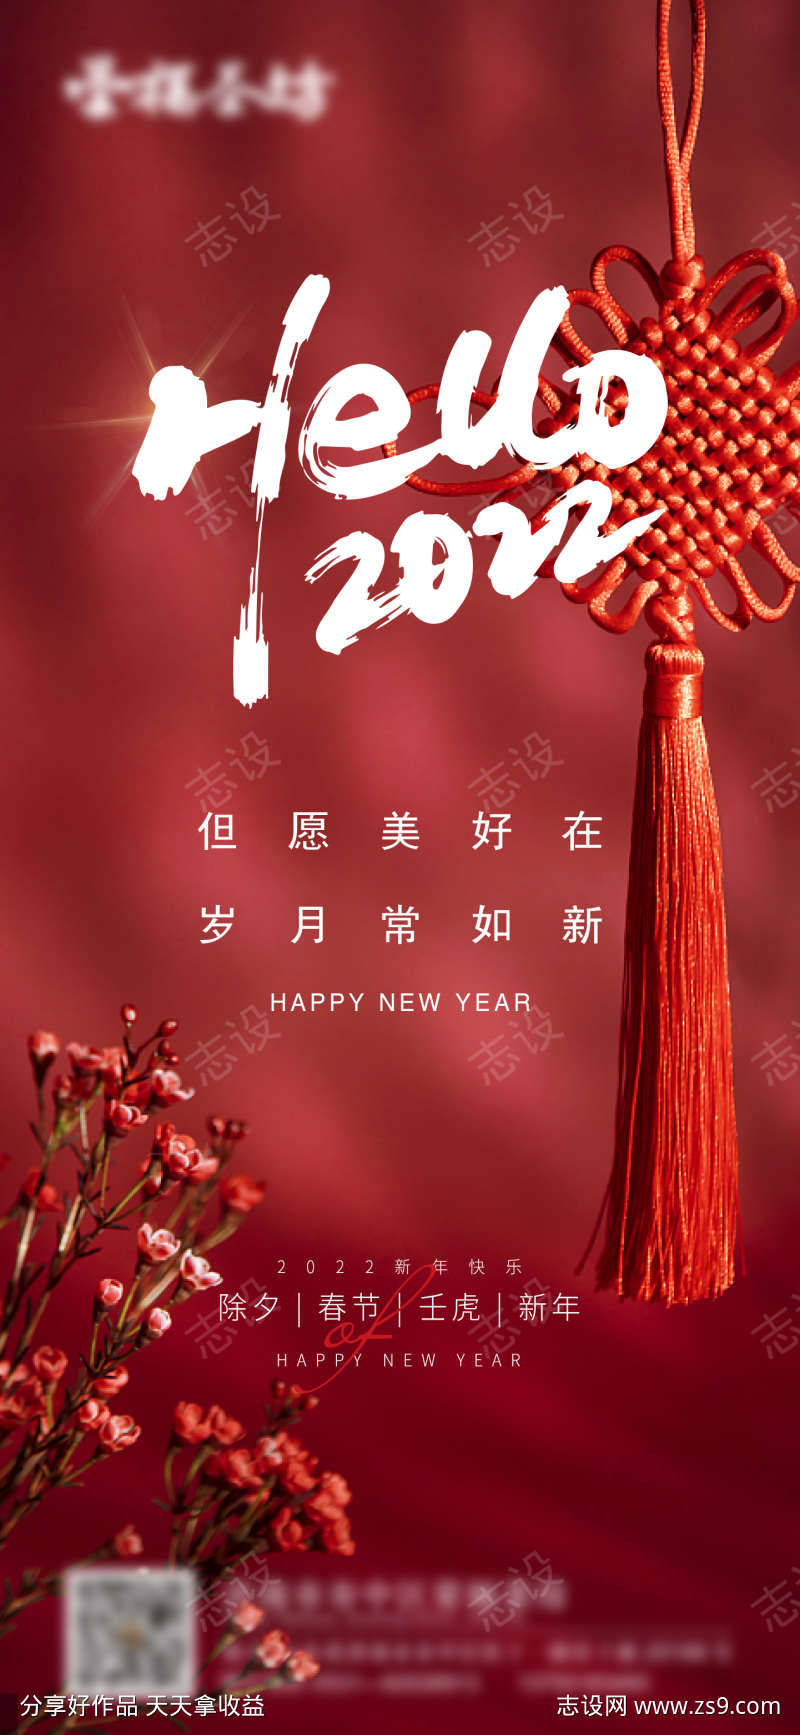 新年除夕中国结实景简约海报